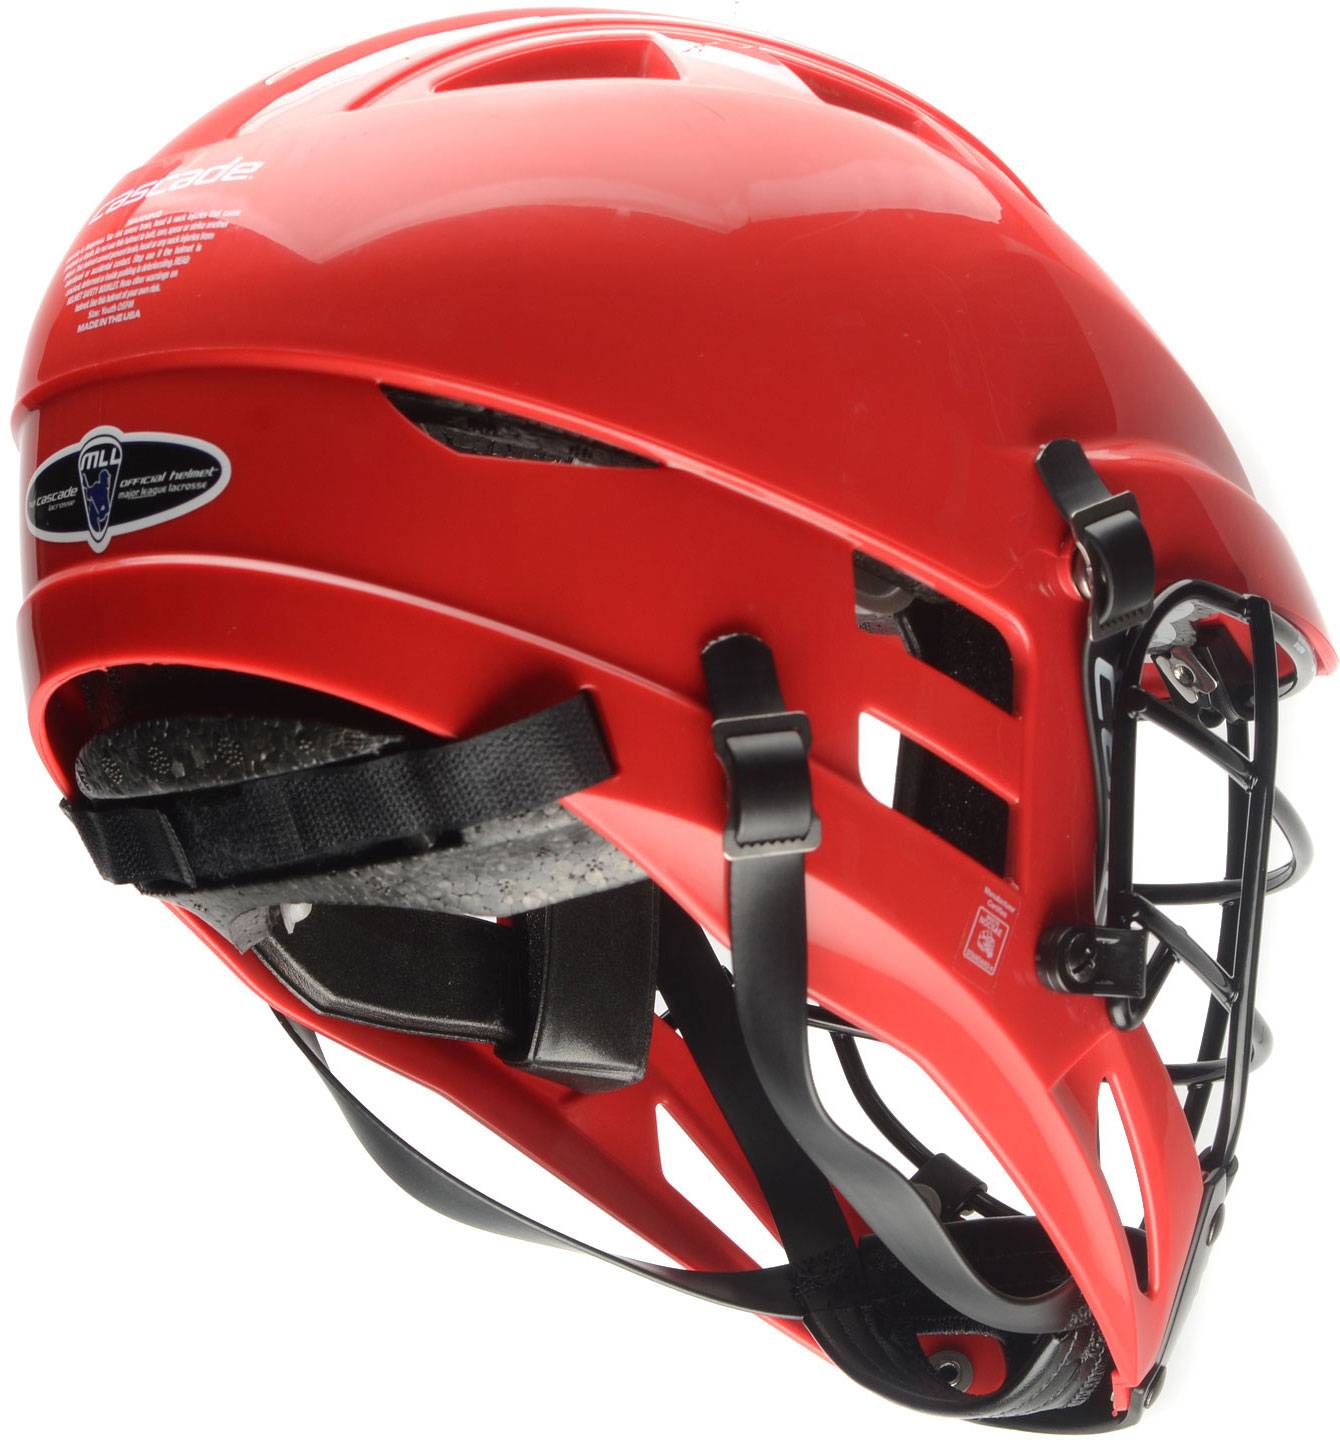 Cascade CSR Youth Lacrosse Helmet